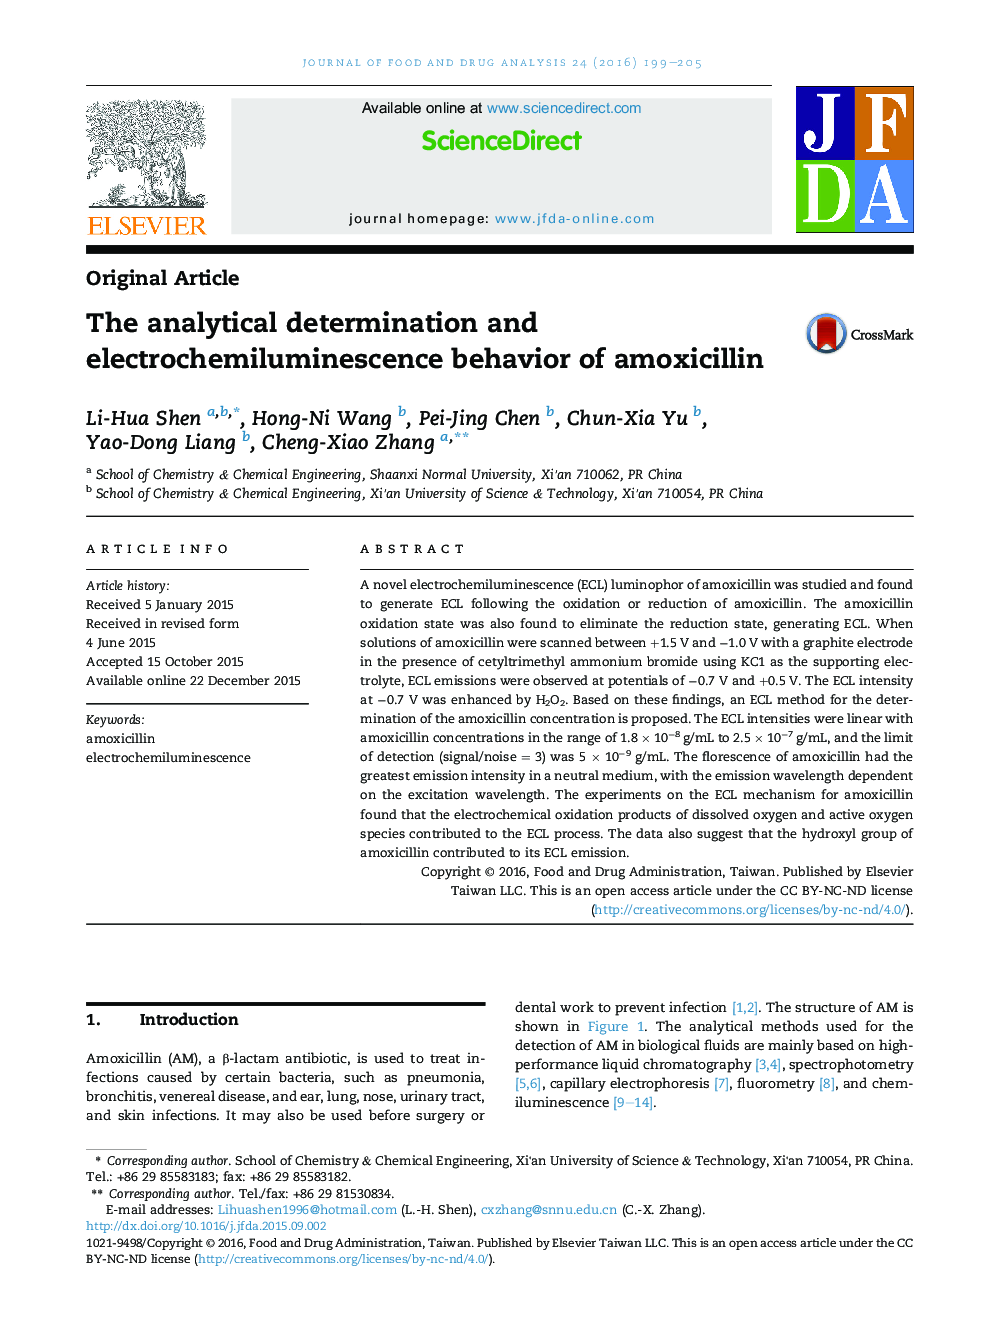 تعیین تحلیلی و رفتار الکتروشیمولومینسانس آموکسی سیلین 